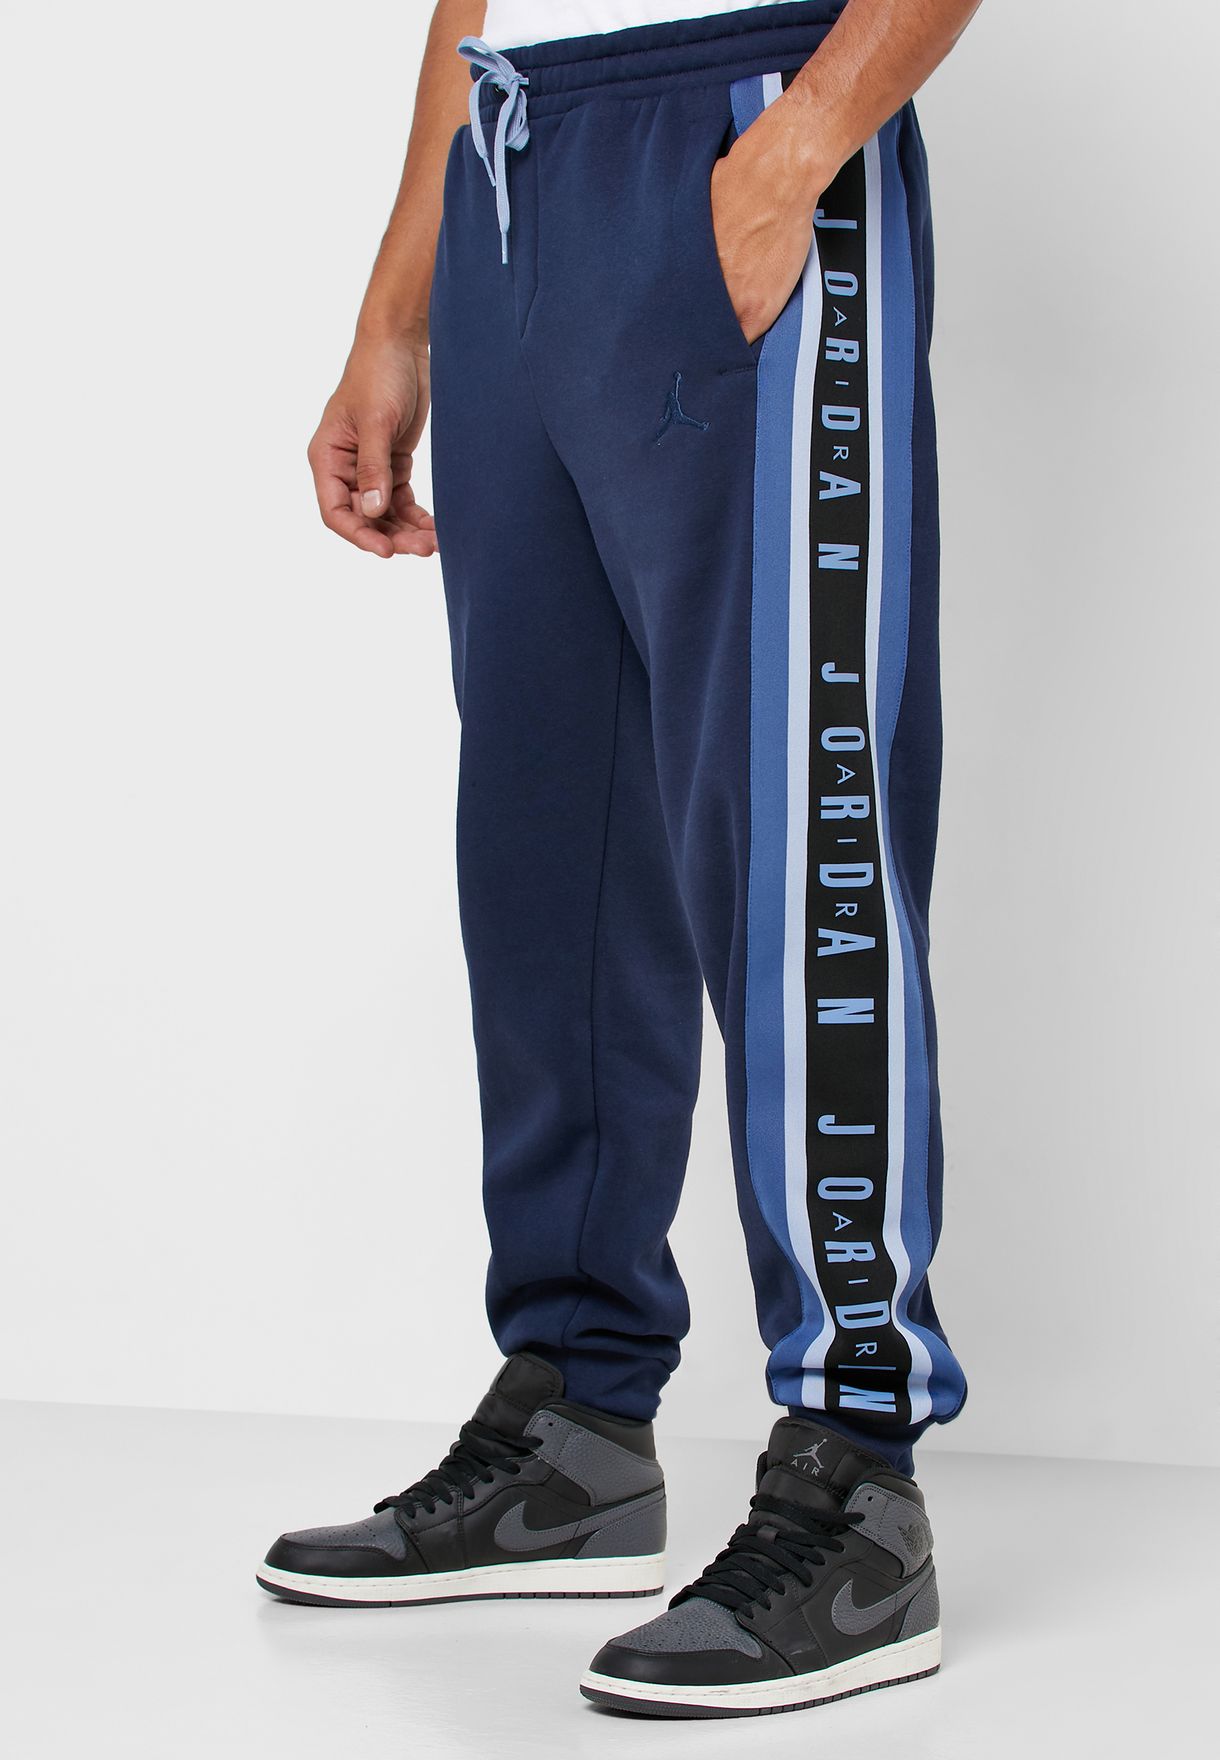 navy blue jordan pants